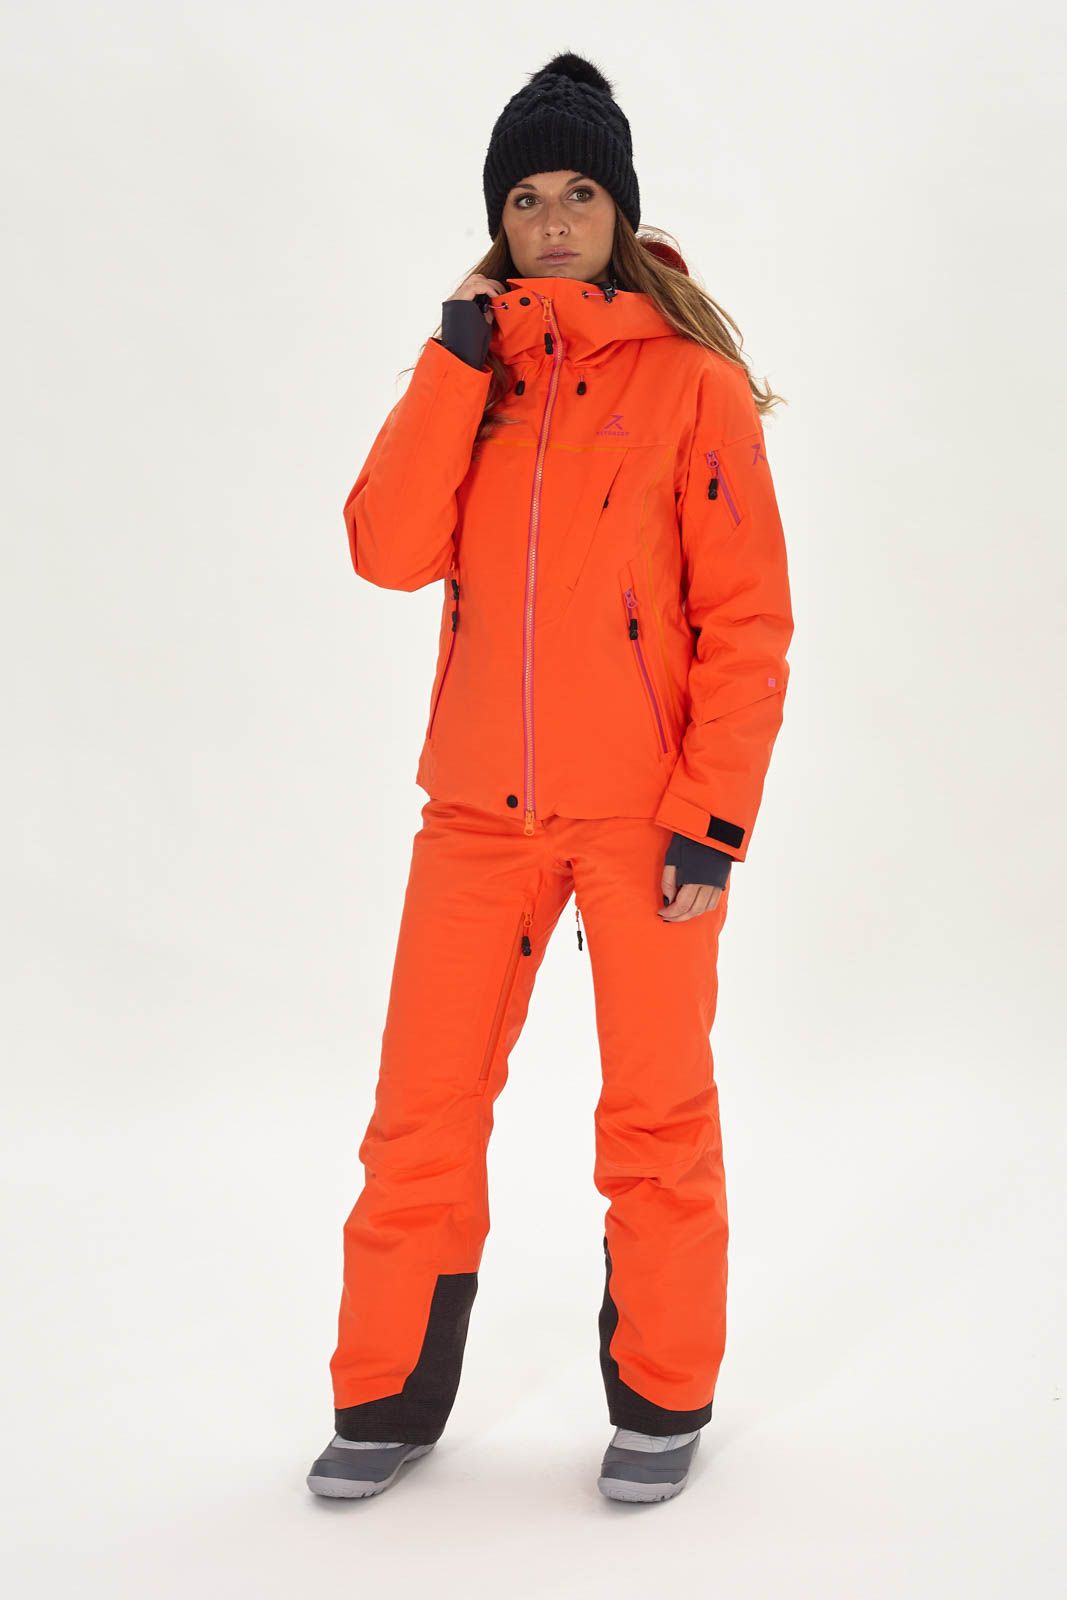 Tener cuidado Inminente carbón Chaqueta de esquí mujer Advancer | Reforcer, ropa de esquí de alta calidad,  hecha en Europa